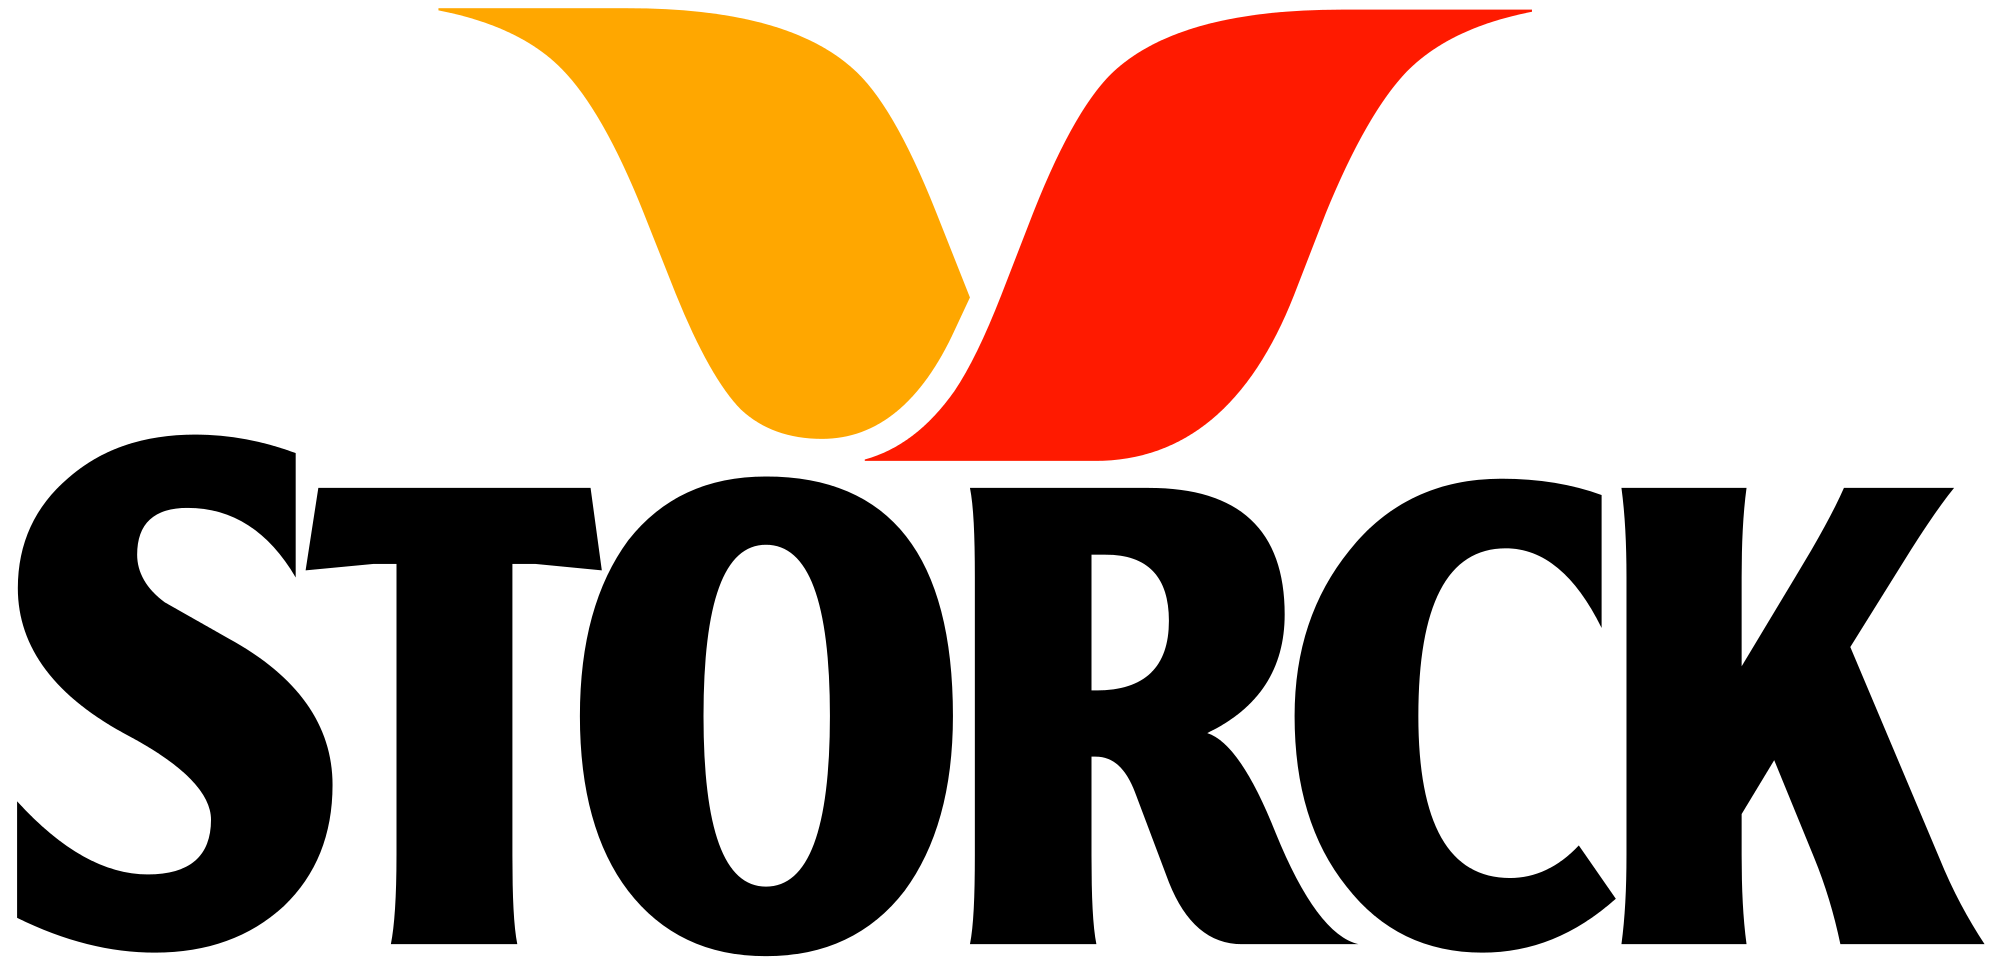 Logo Storck